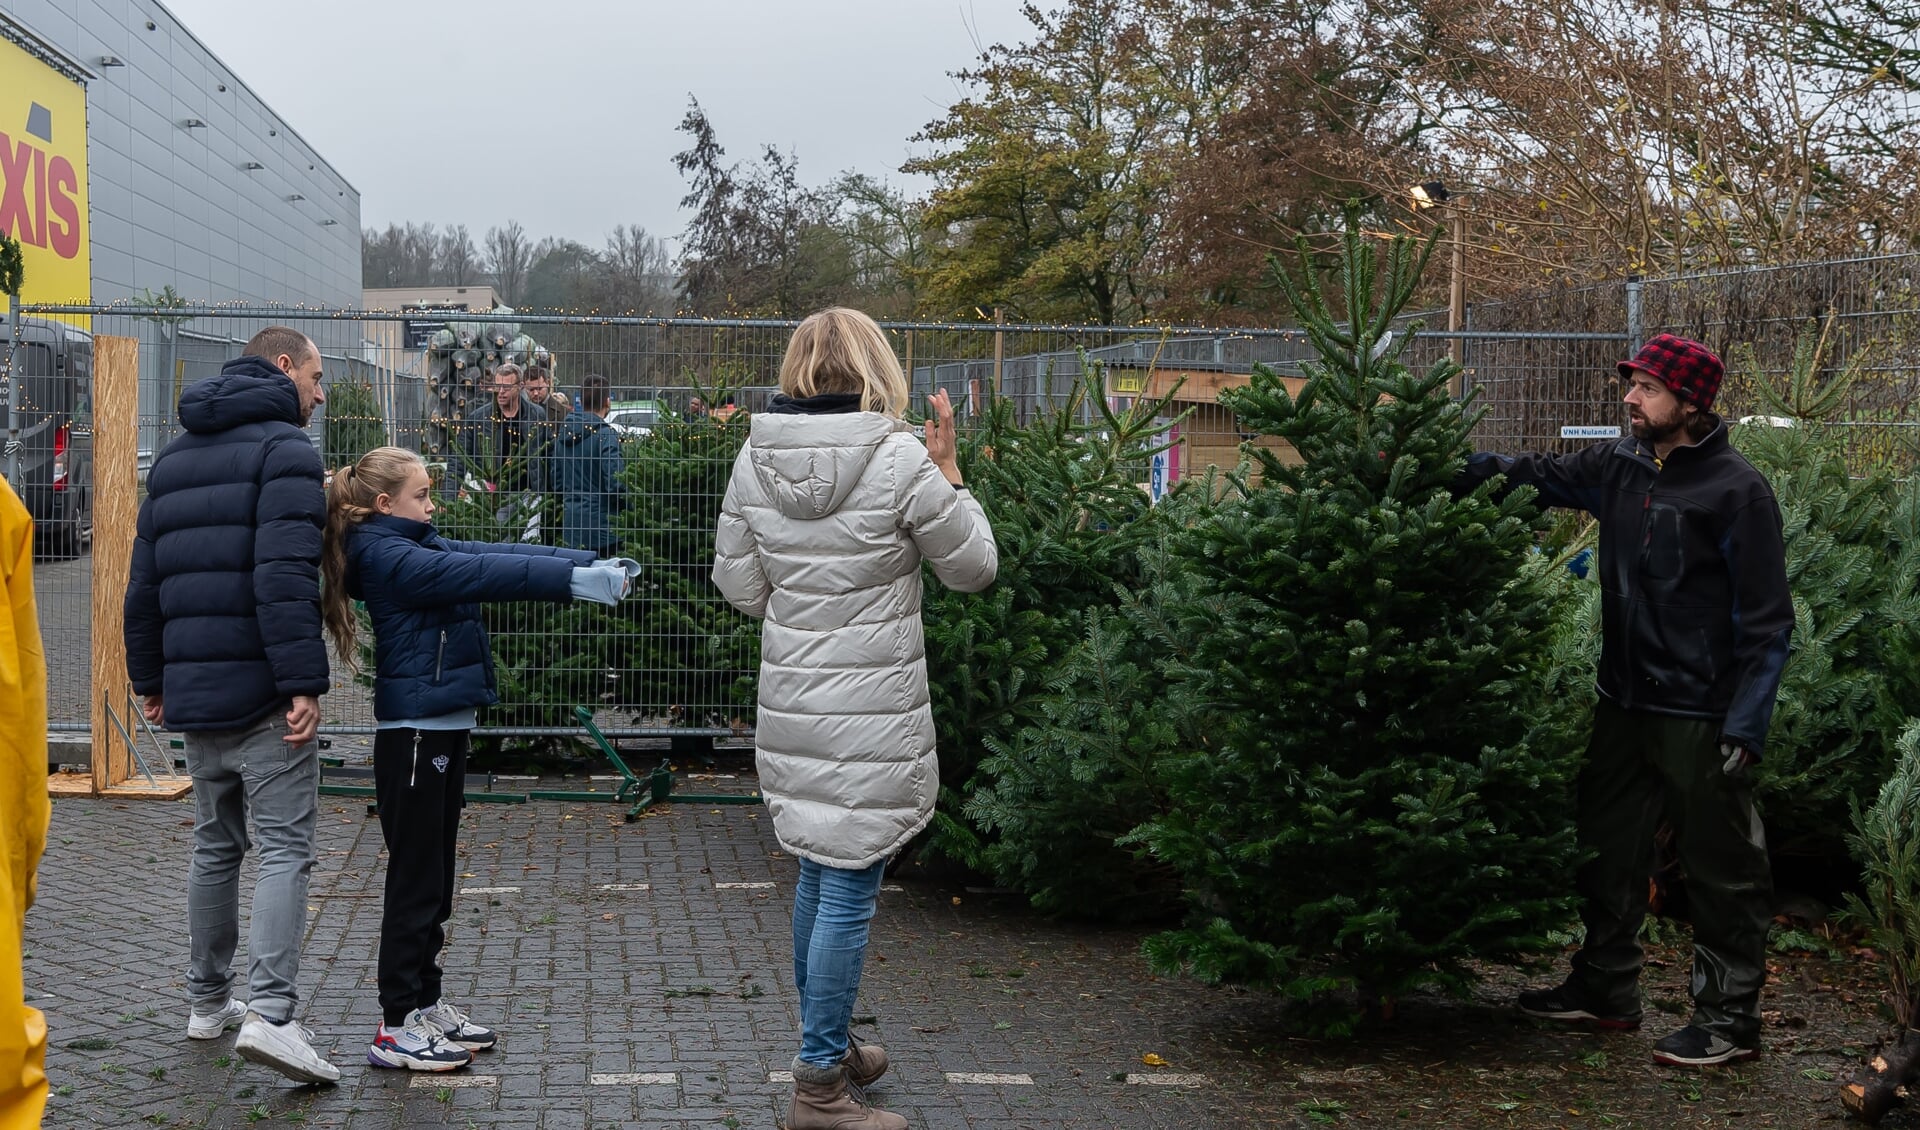 Het is al lekker druk bij de verkoop van kerstbomen, zoals hier bij Praxis in Purmerend.